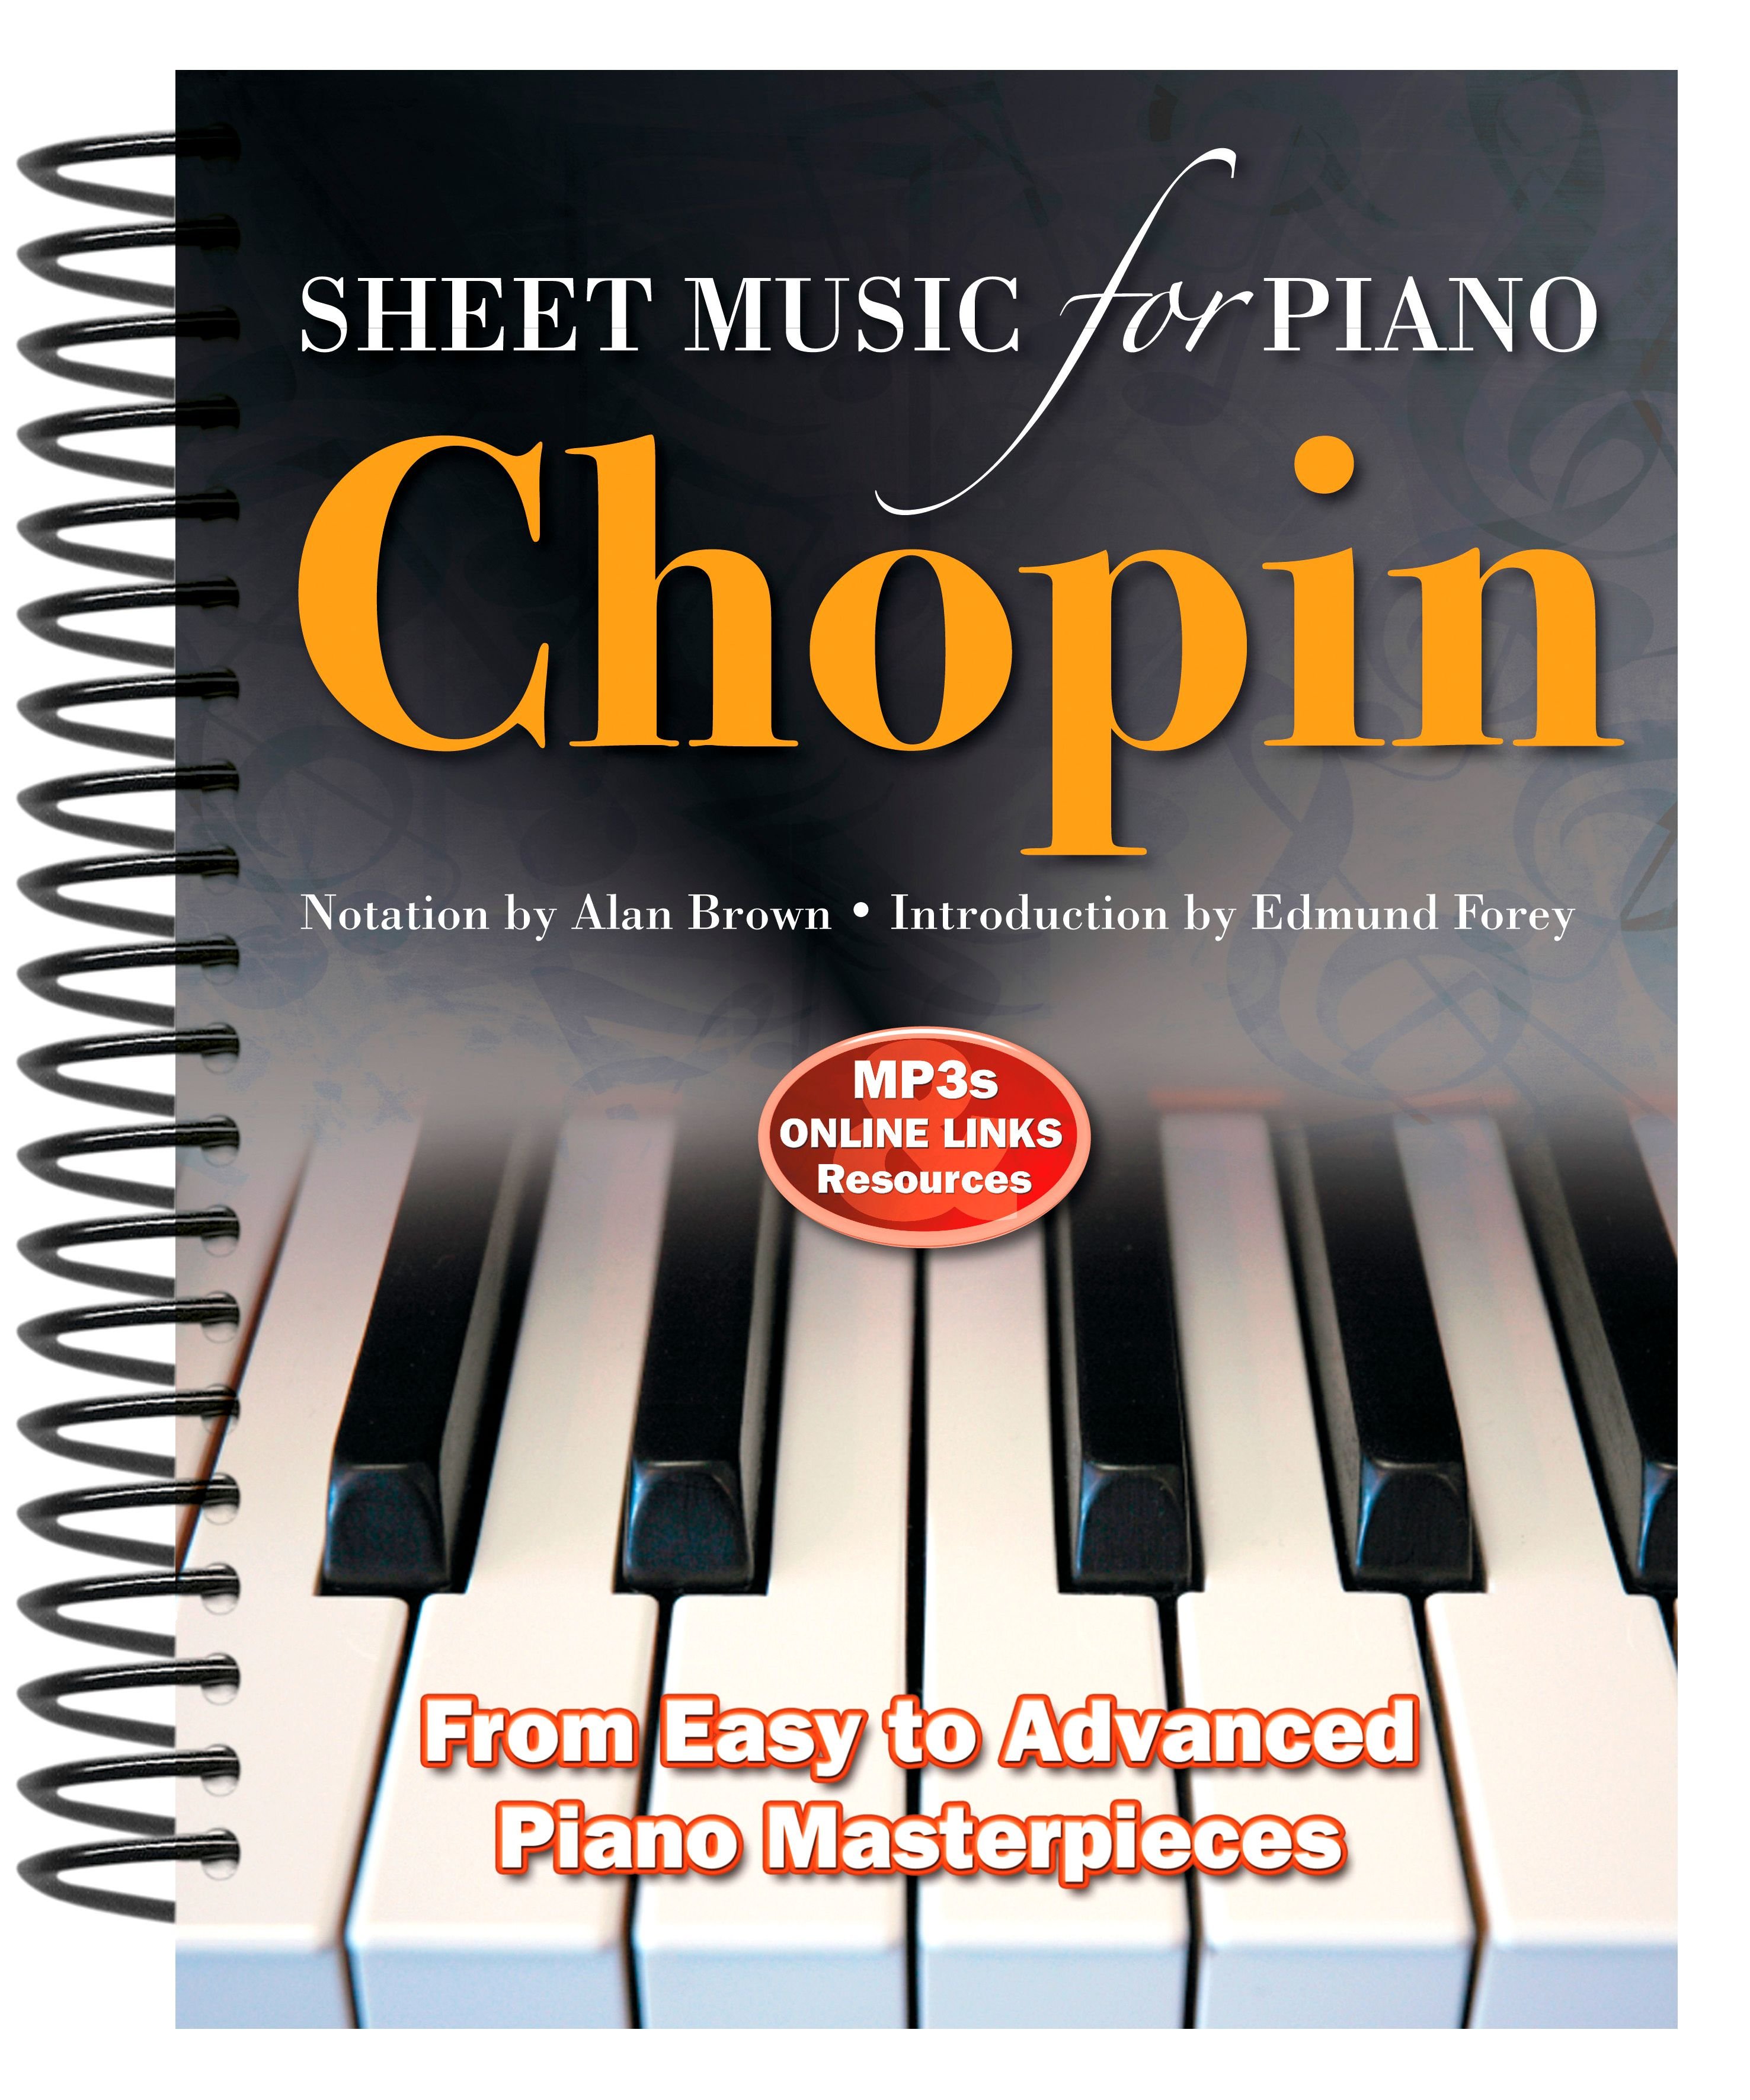 Chopin: Sheet Music for Piano